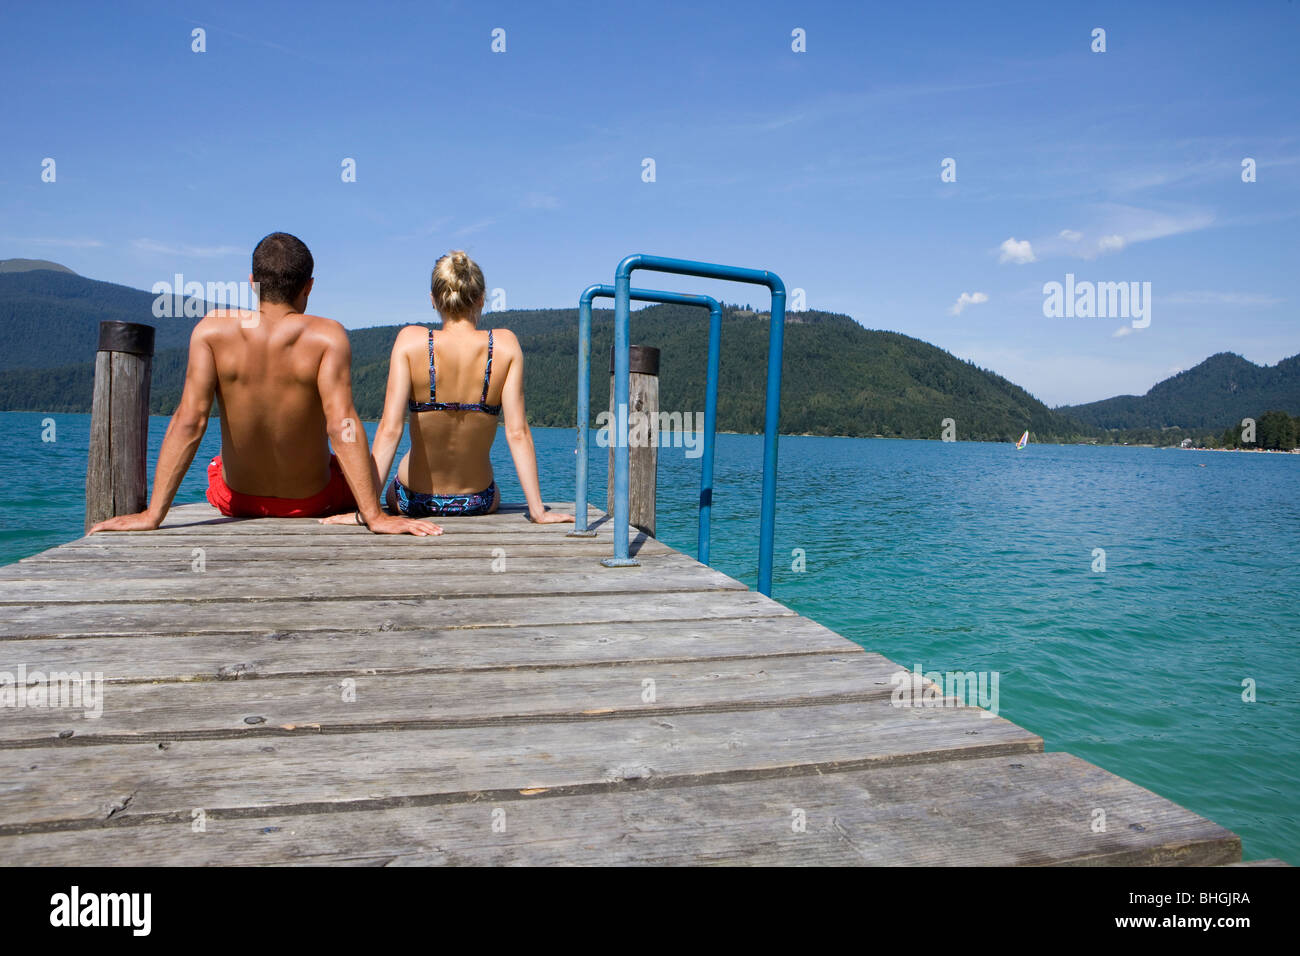 Un couple assis sur un quai près d'un lac Banque D'Images